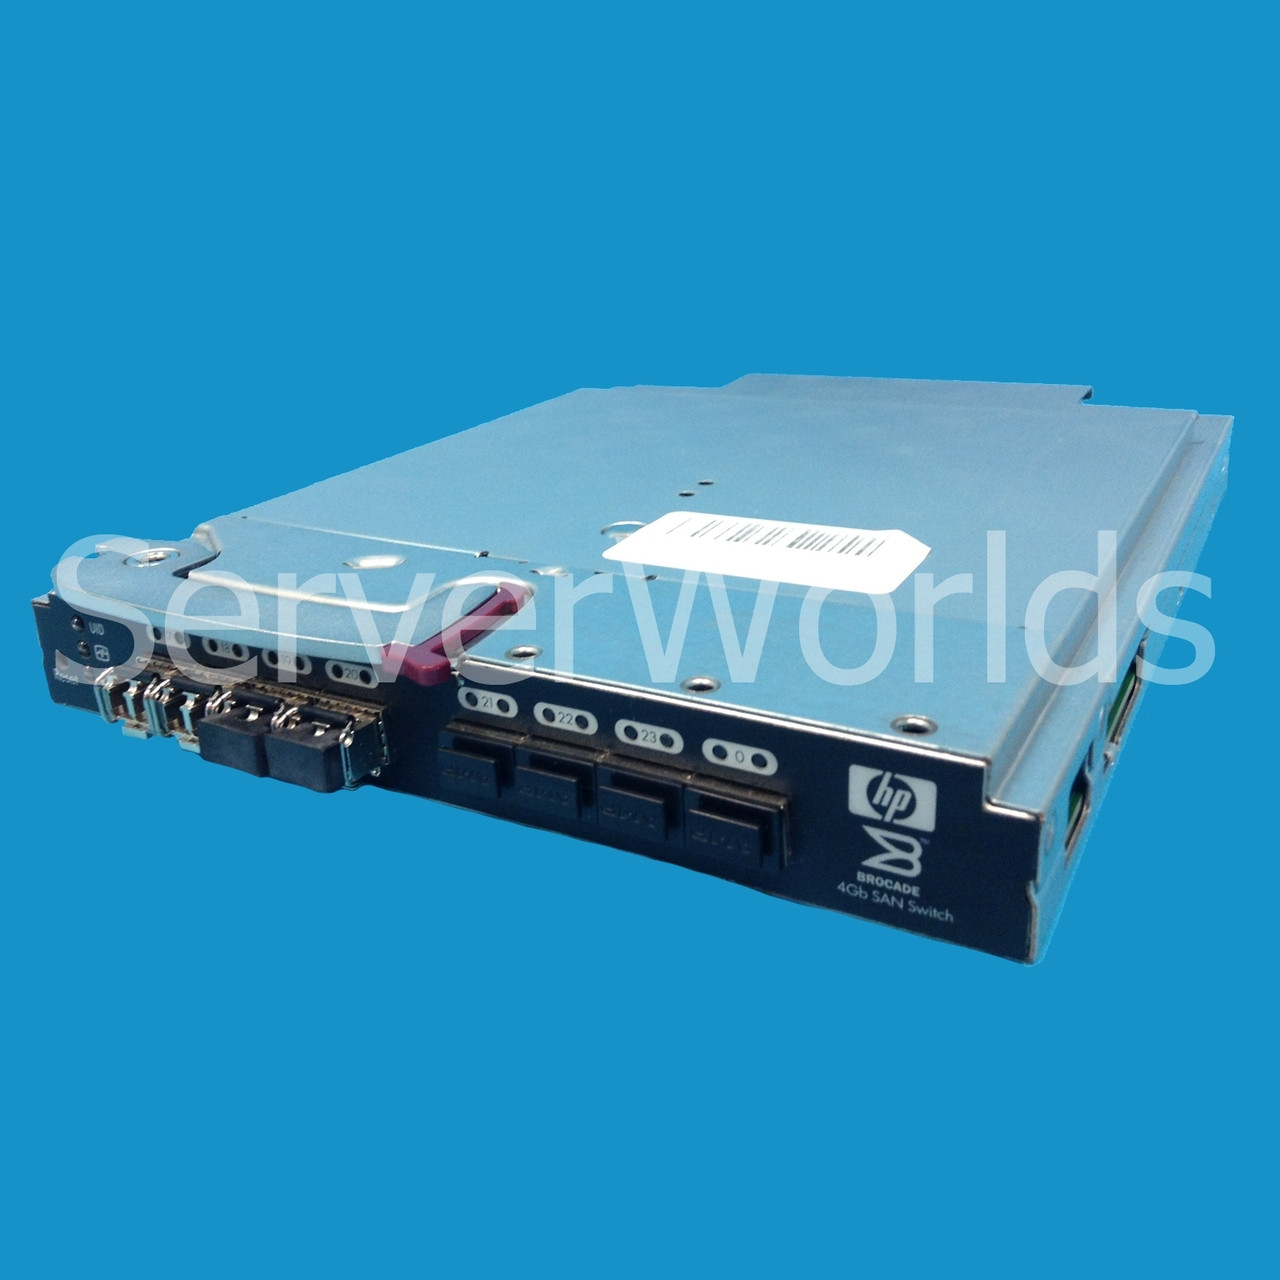 HP Brocade Bladesystem 4/24 4GB SAN Switch 411121-001 AE372A